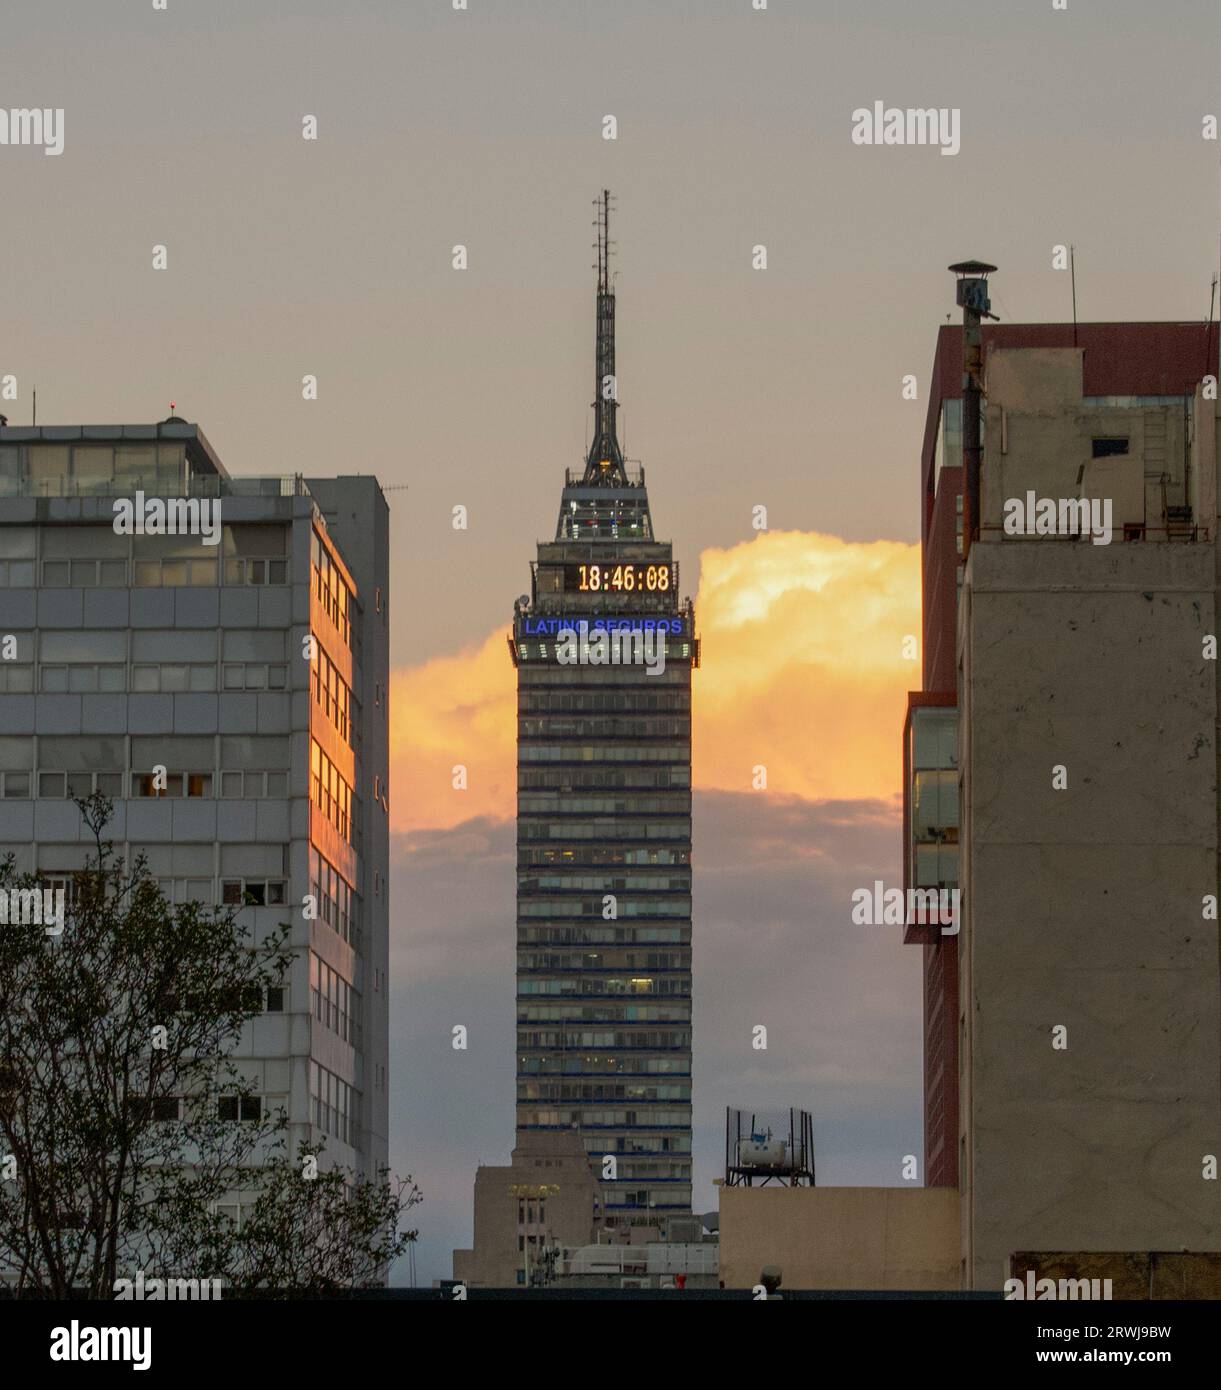 Torre Latinoamericana, Mexico City, Mexico Stock Photo